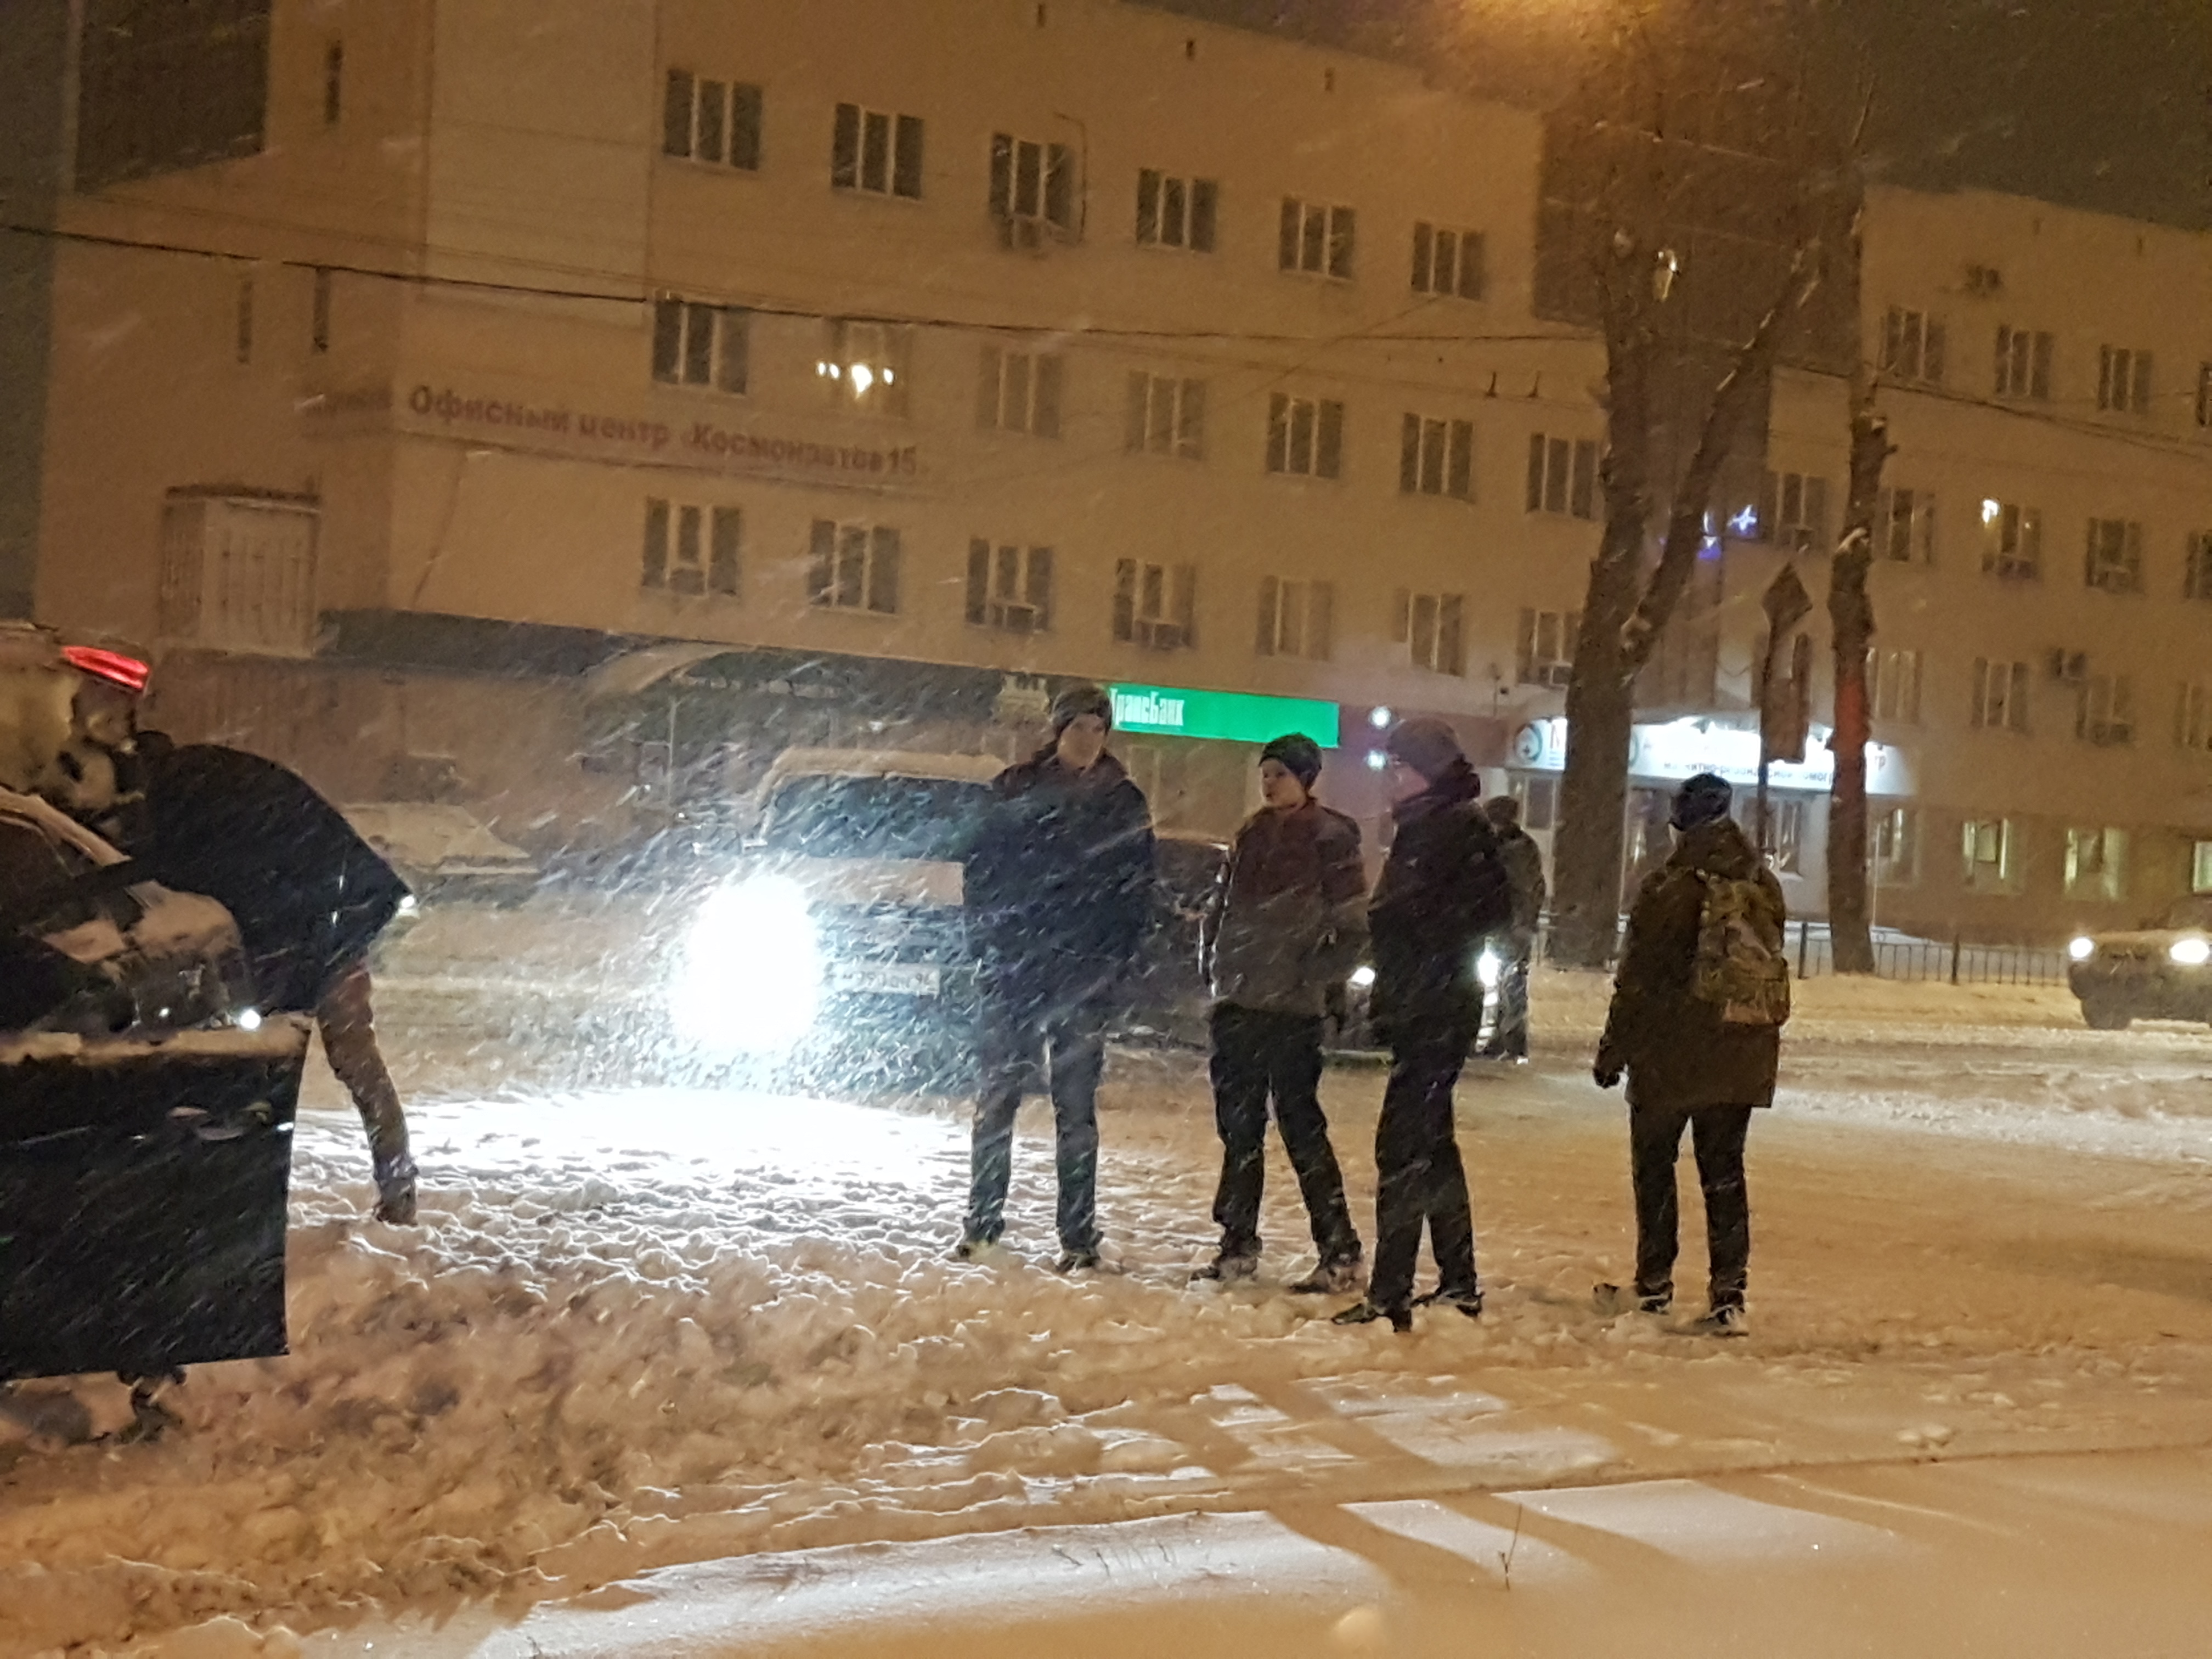 Трамваи встали: снегопад и ДТП парализовали движение на проспекте Космонавтов в Екатеринбурге